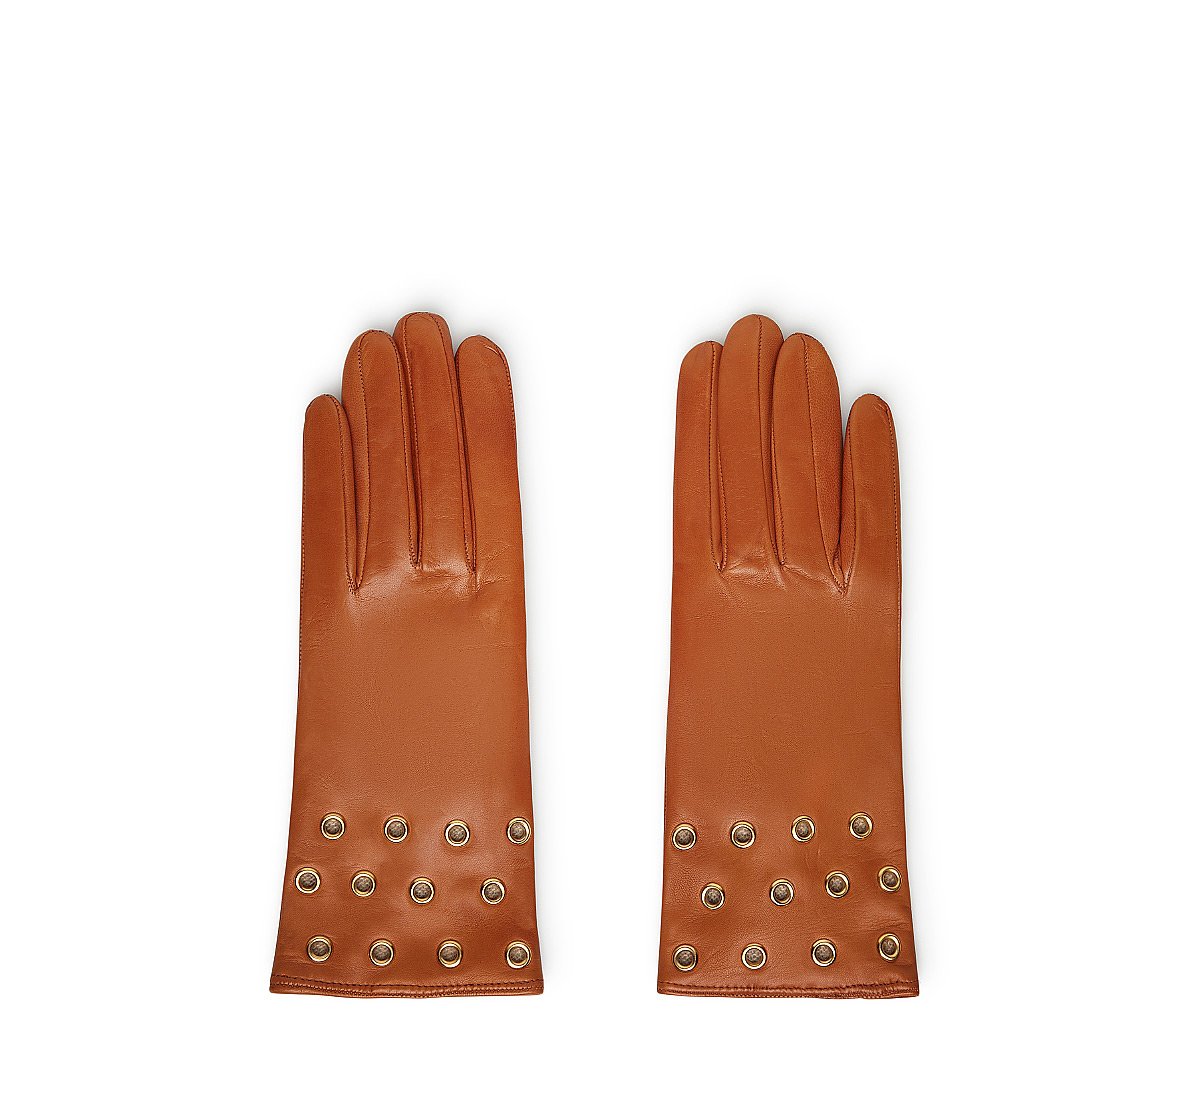 Leather appliqué gloves